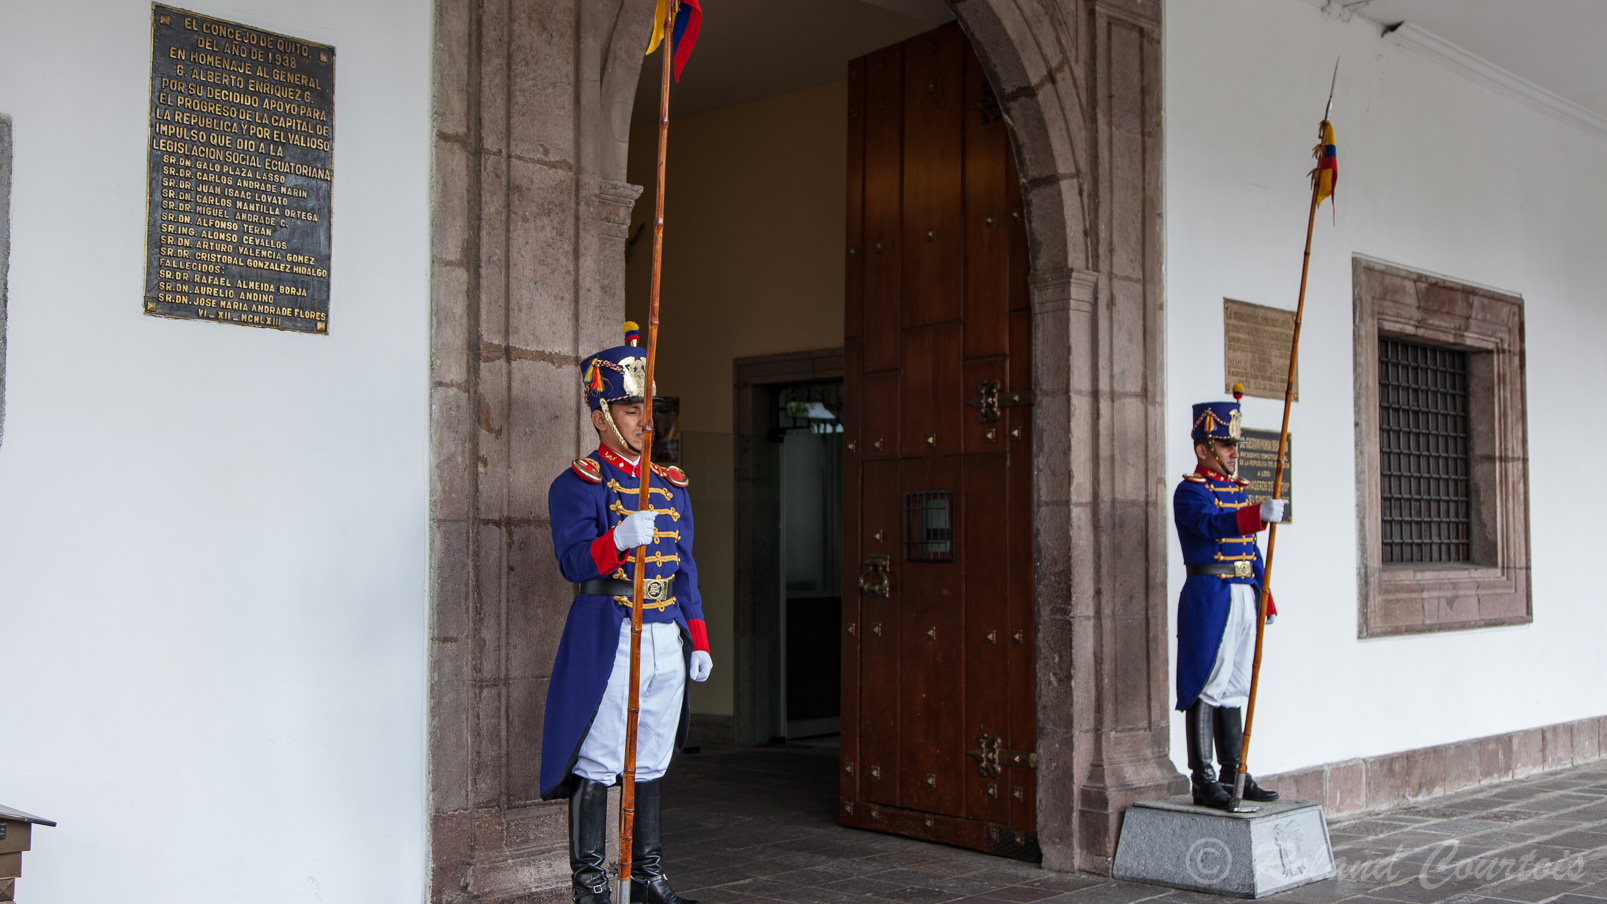 Edifié au XVIIè siècle, il fut le siège de l'Audiencia Real. Les soldats portent l'uniforme du XVIè siecle utilisé lors de la bataille de Pichincha.